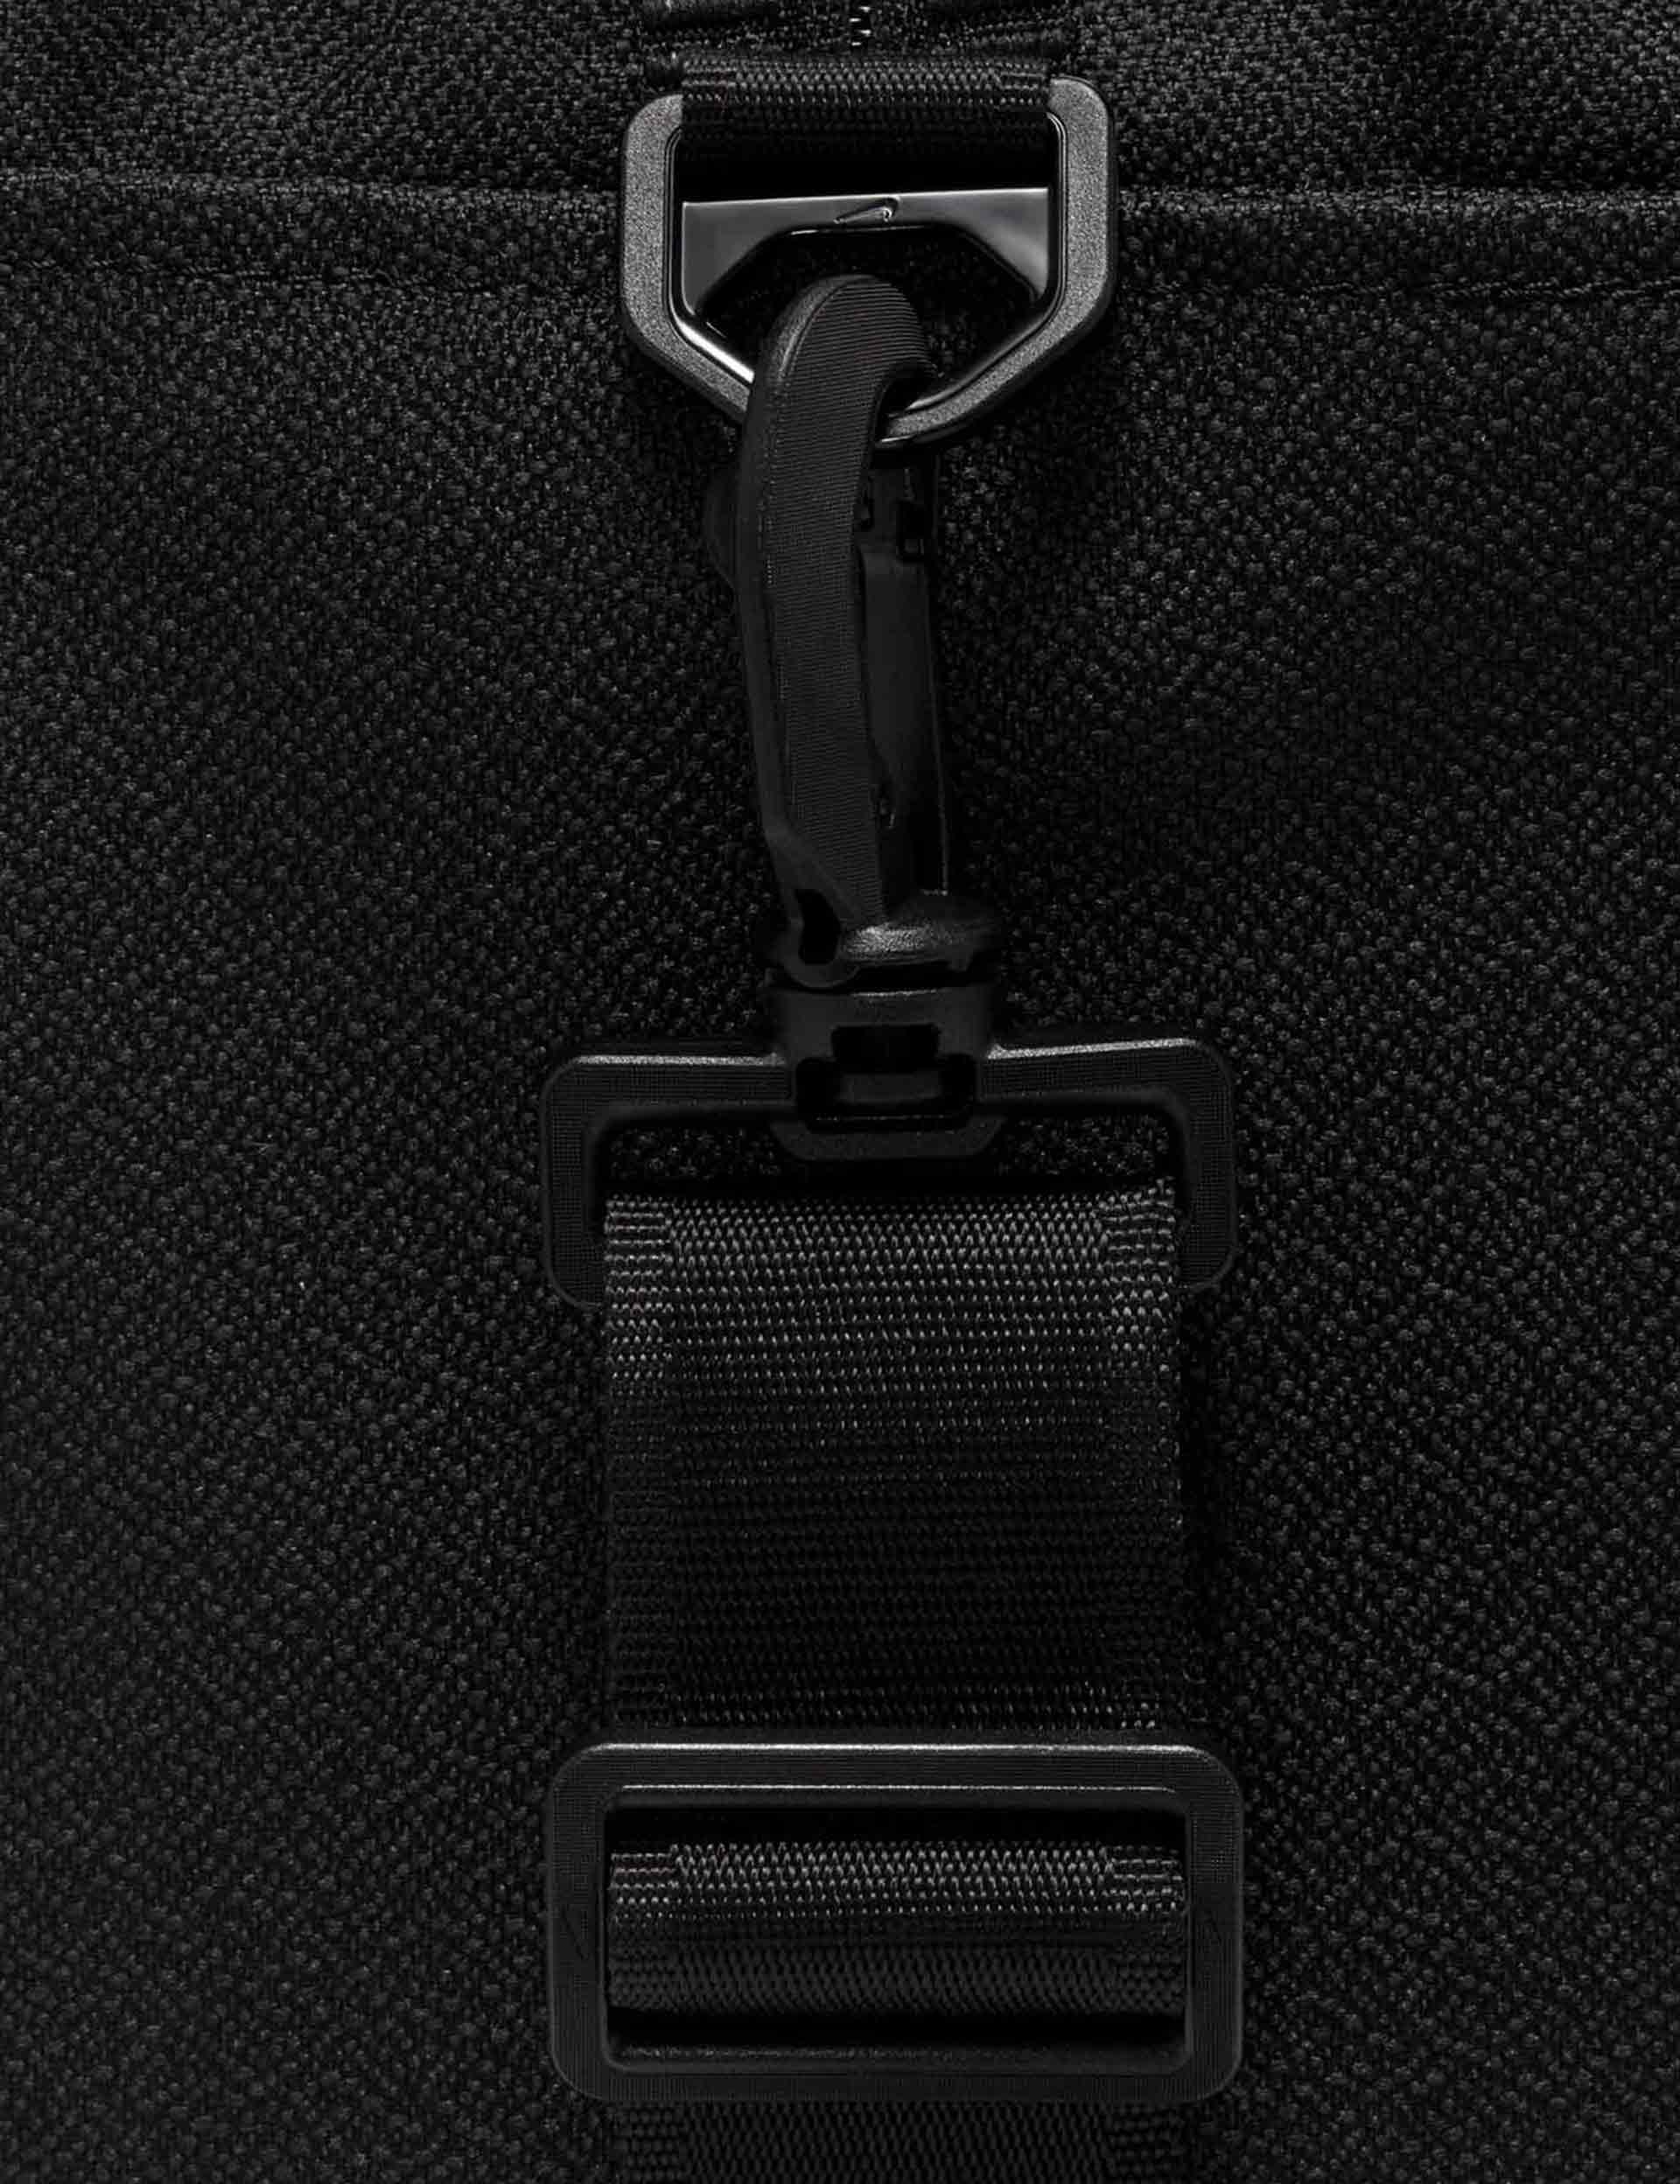 Nike One Club duffle bag in black